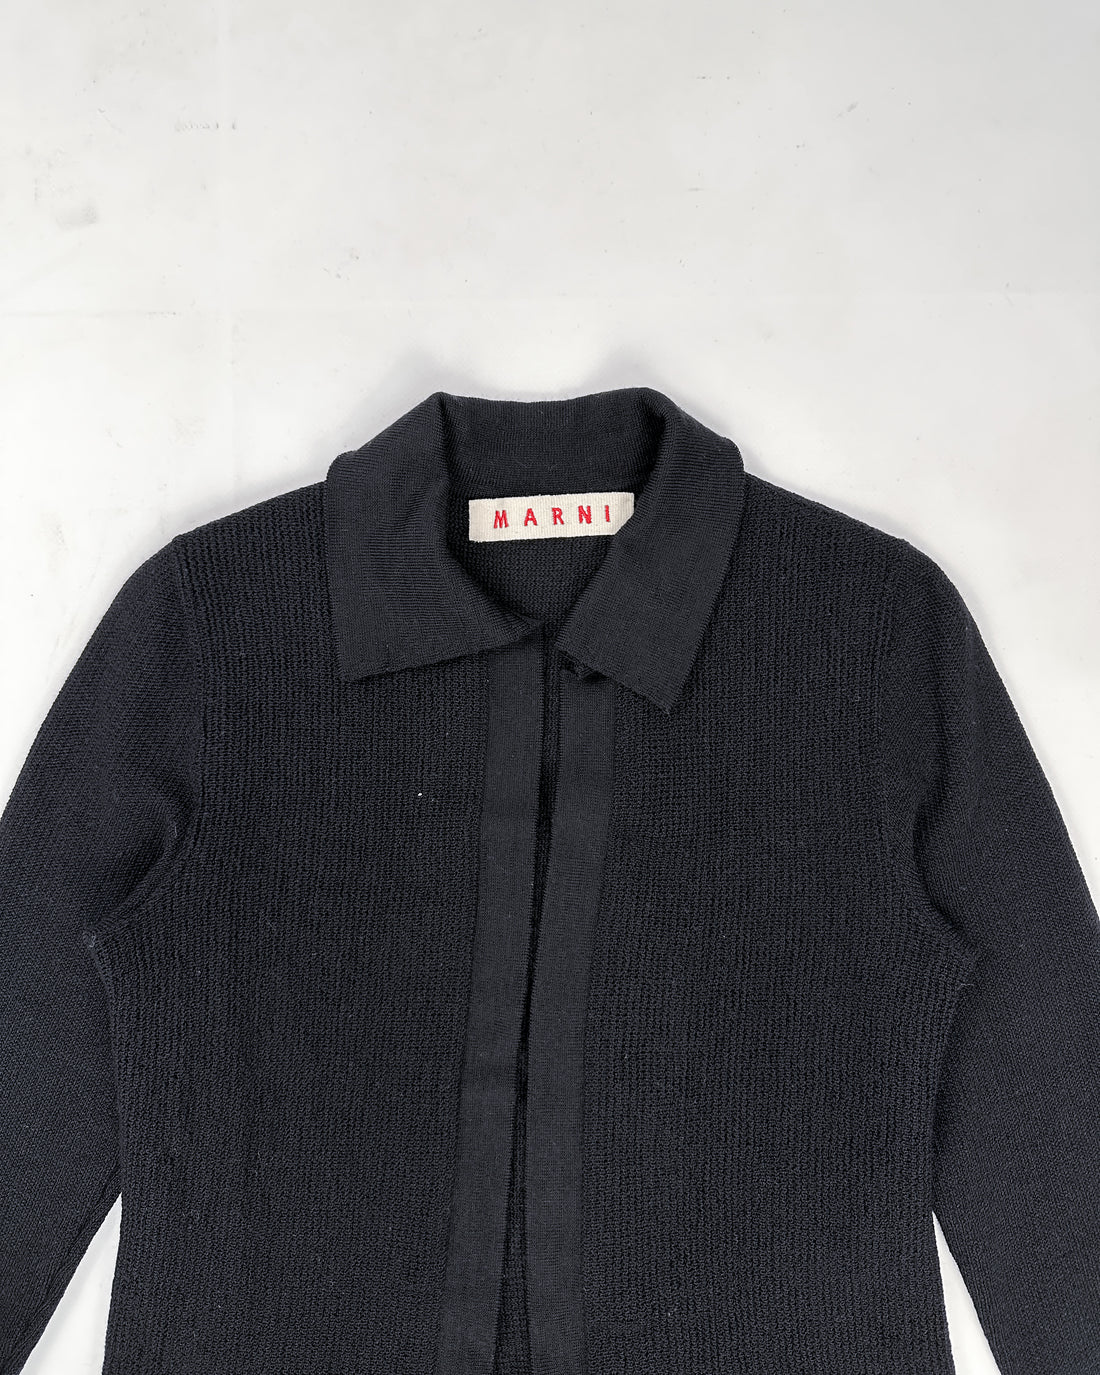 Marni Wool Knit Black Cardigan 2000's